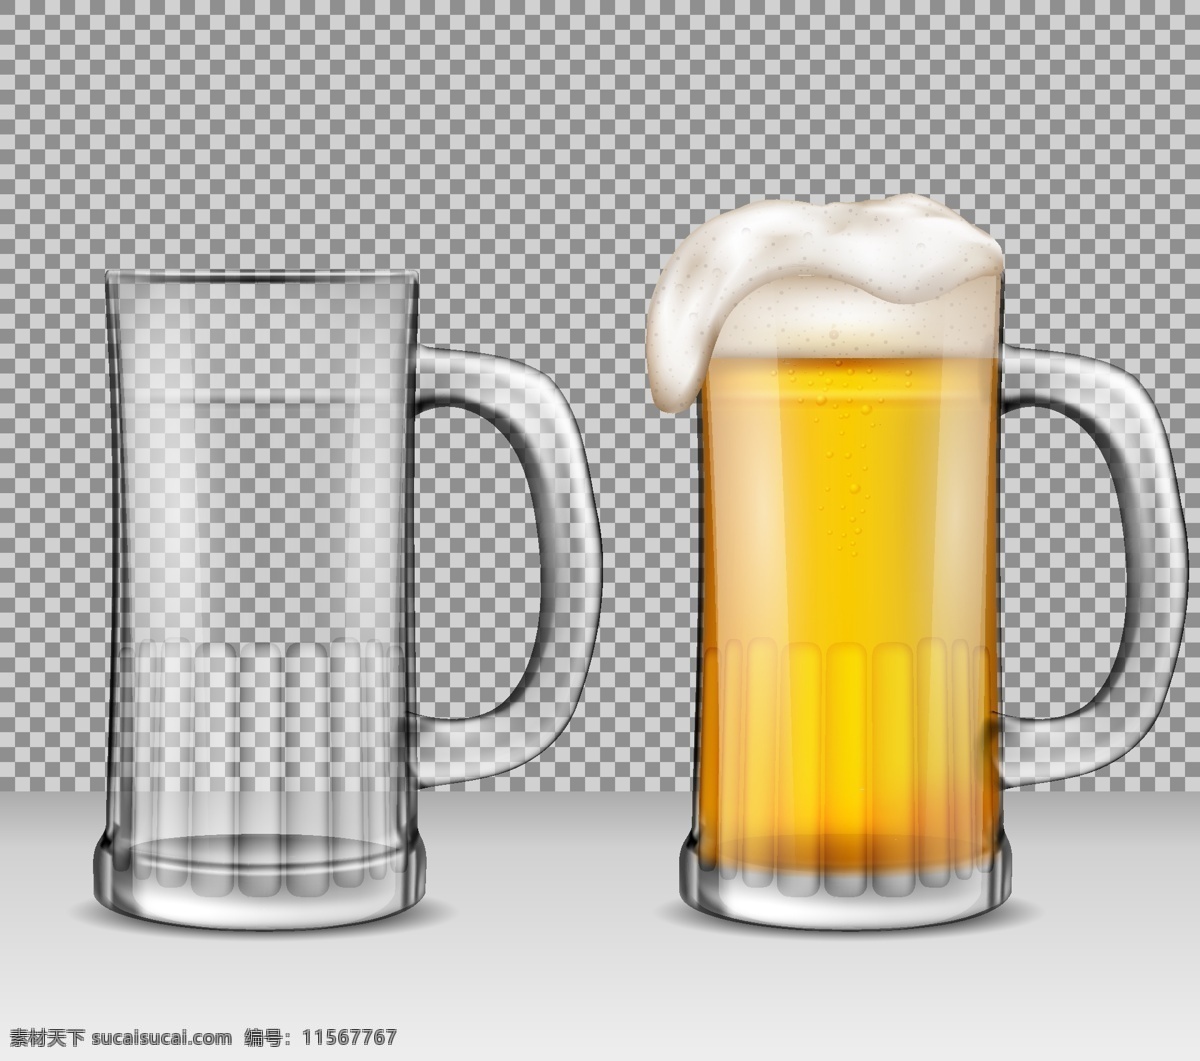 啤酒杯 矢量 啤酒杯矢量 啤酒杯素材 啤酒 玻璃啤酒杯 共享设计矢量 生活百科 生活用品